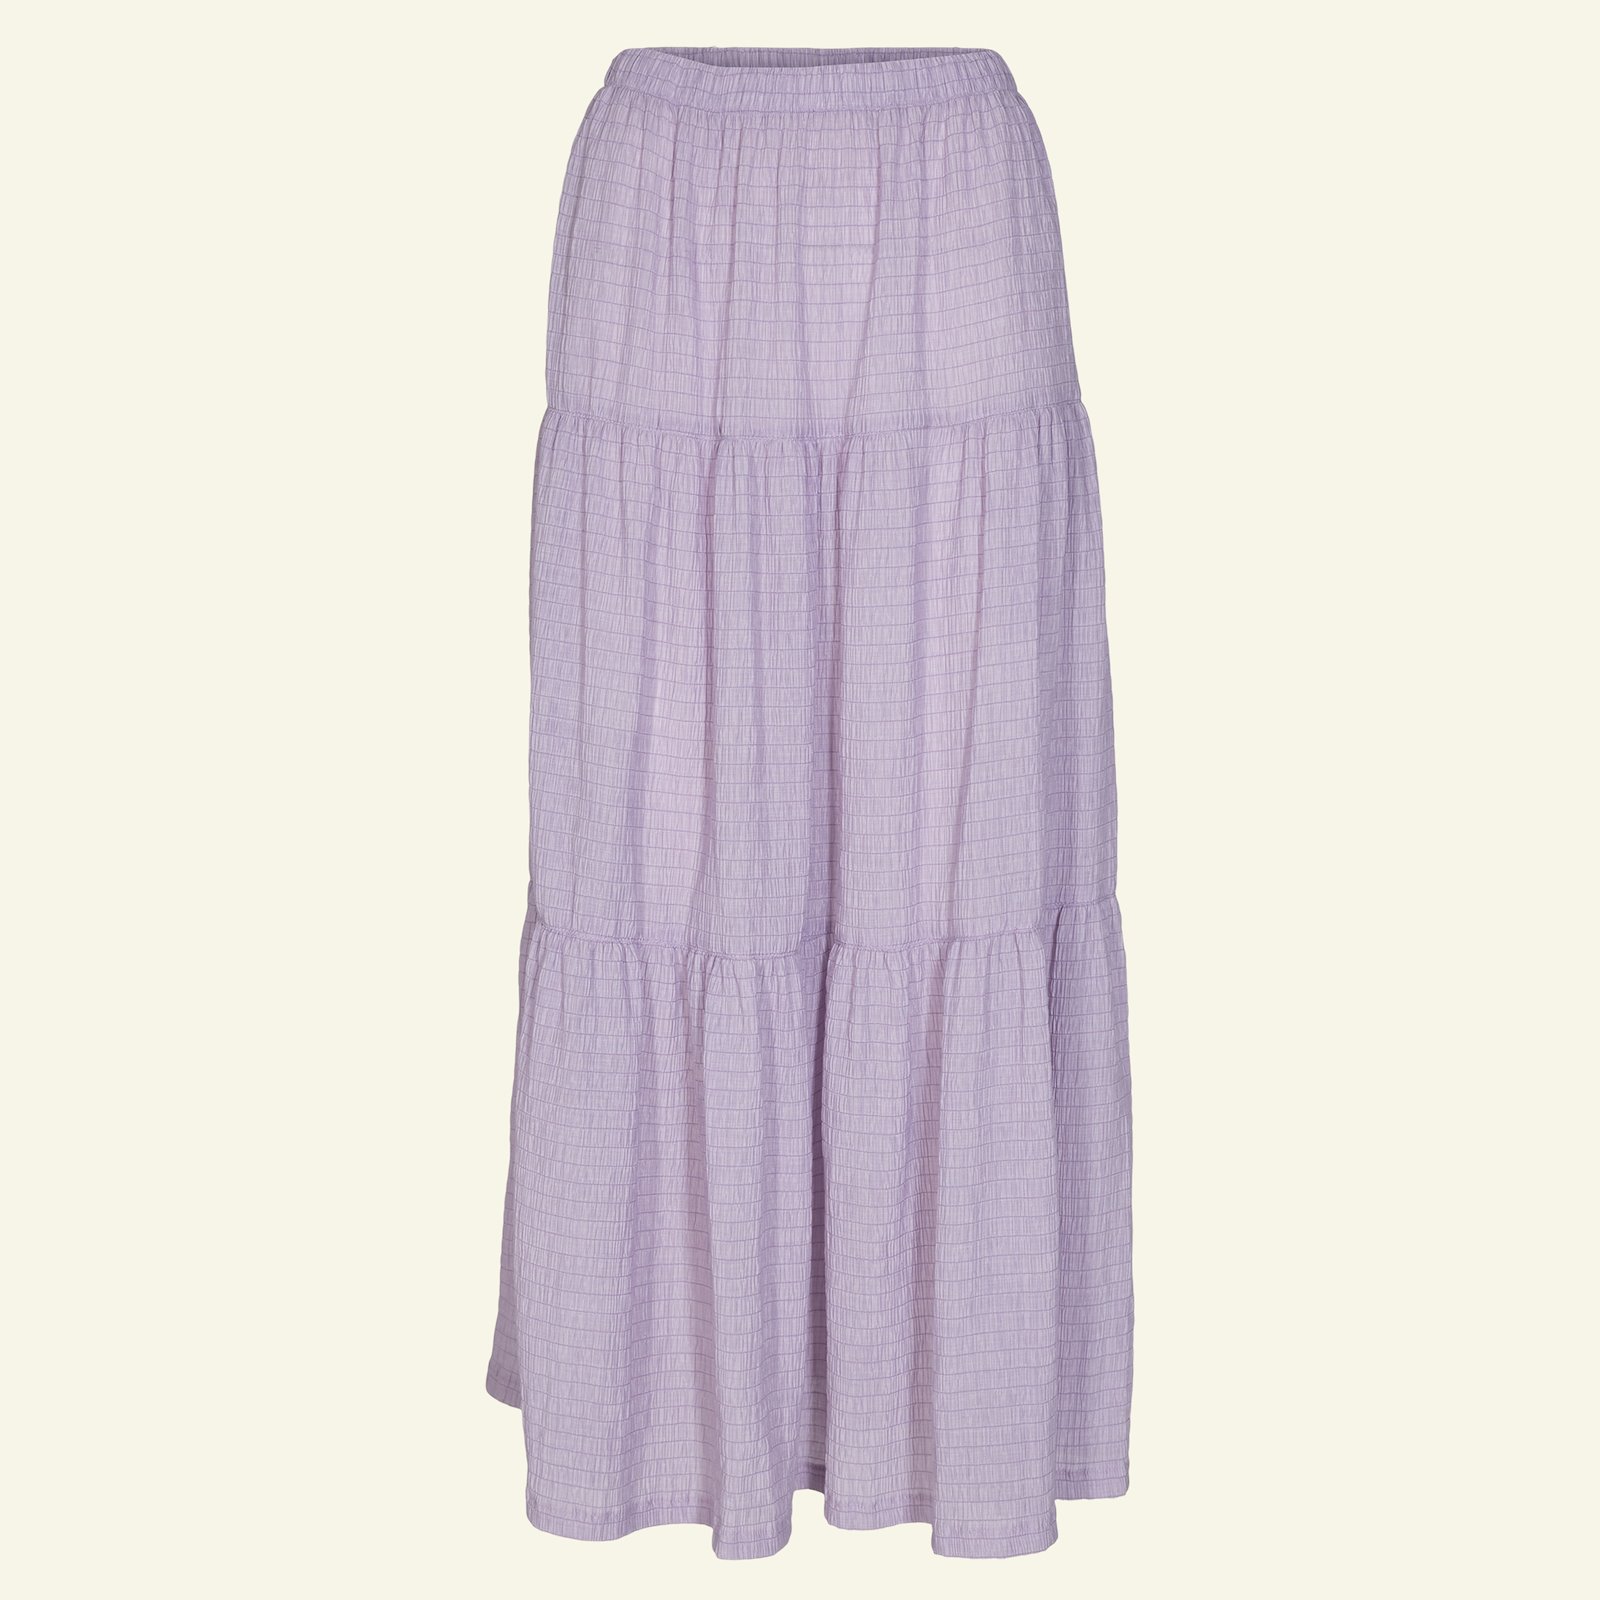 Split level skirt, M p21046_560260_sskit